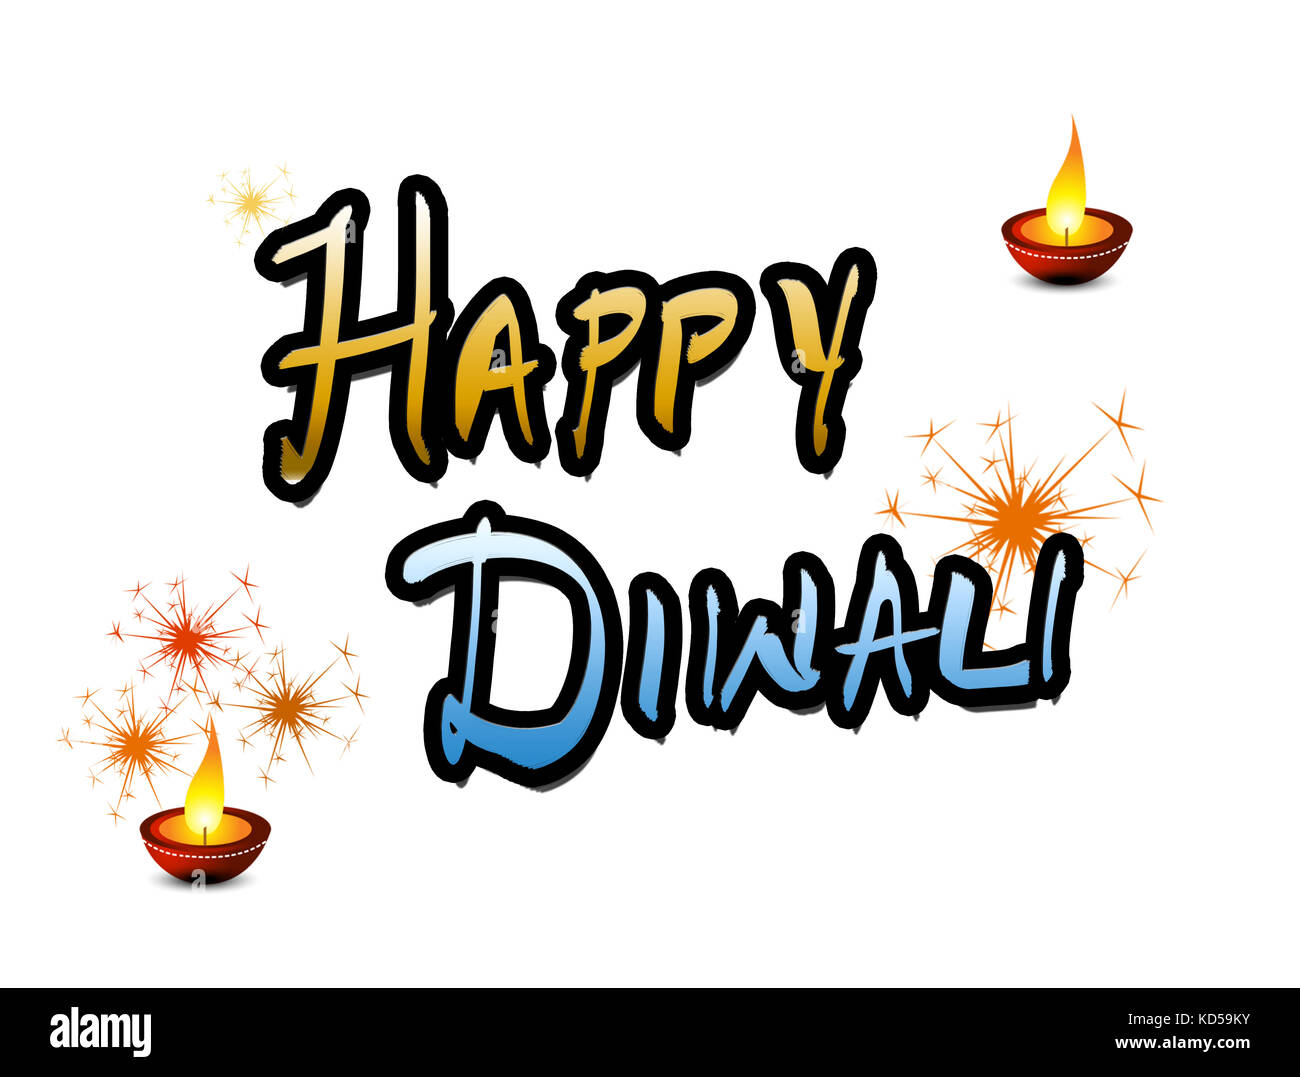 Happy diwali souhaits et salutations Banque D'Images